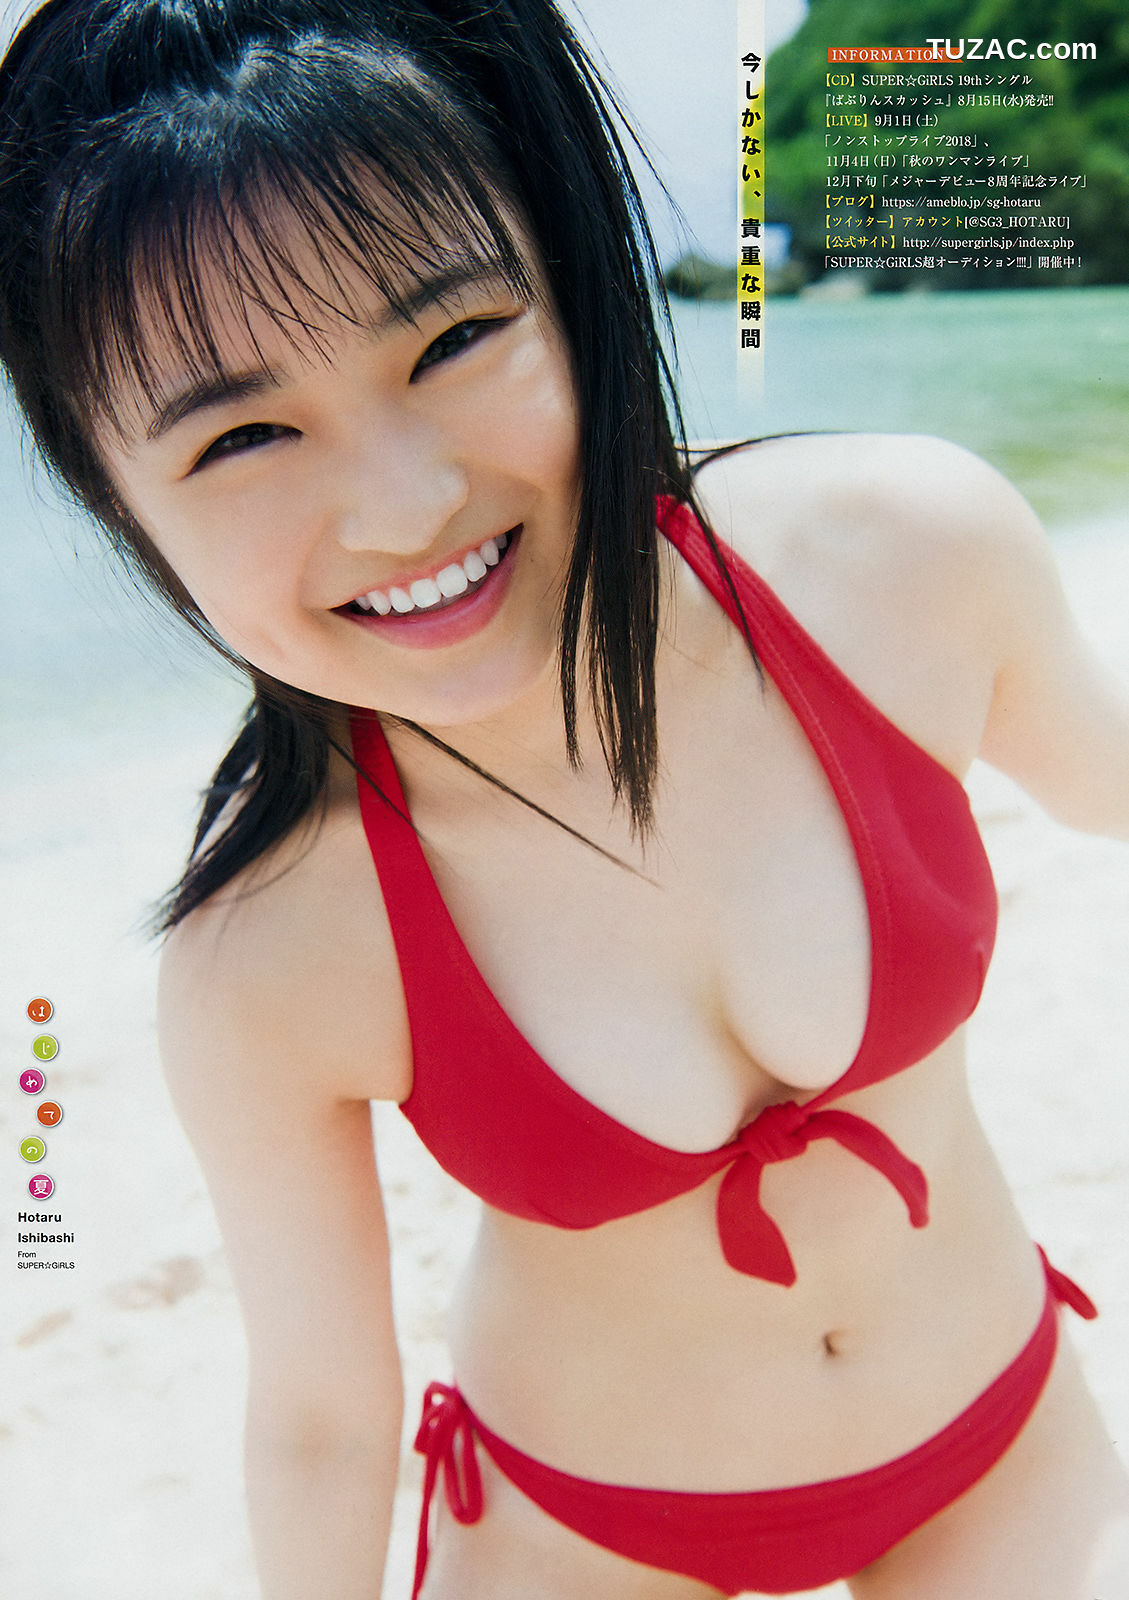 Young Magazine杂志写真_ 西野七瀬 石橋蛍 2018年No.33 写真杂志[12P]